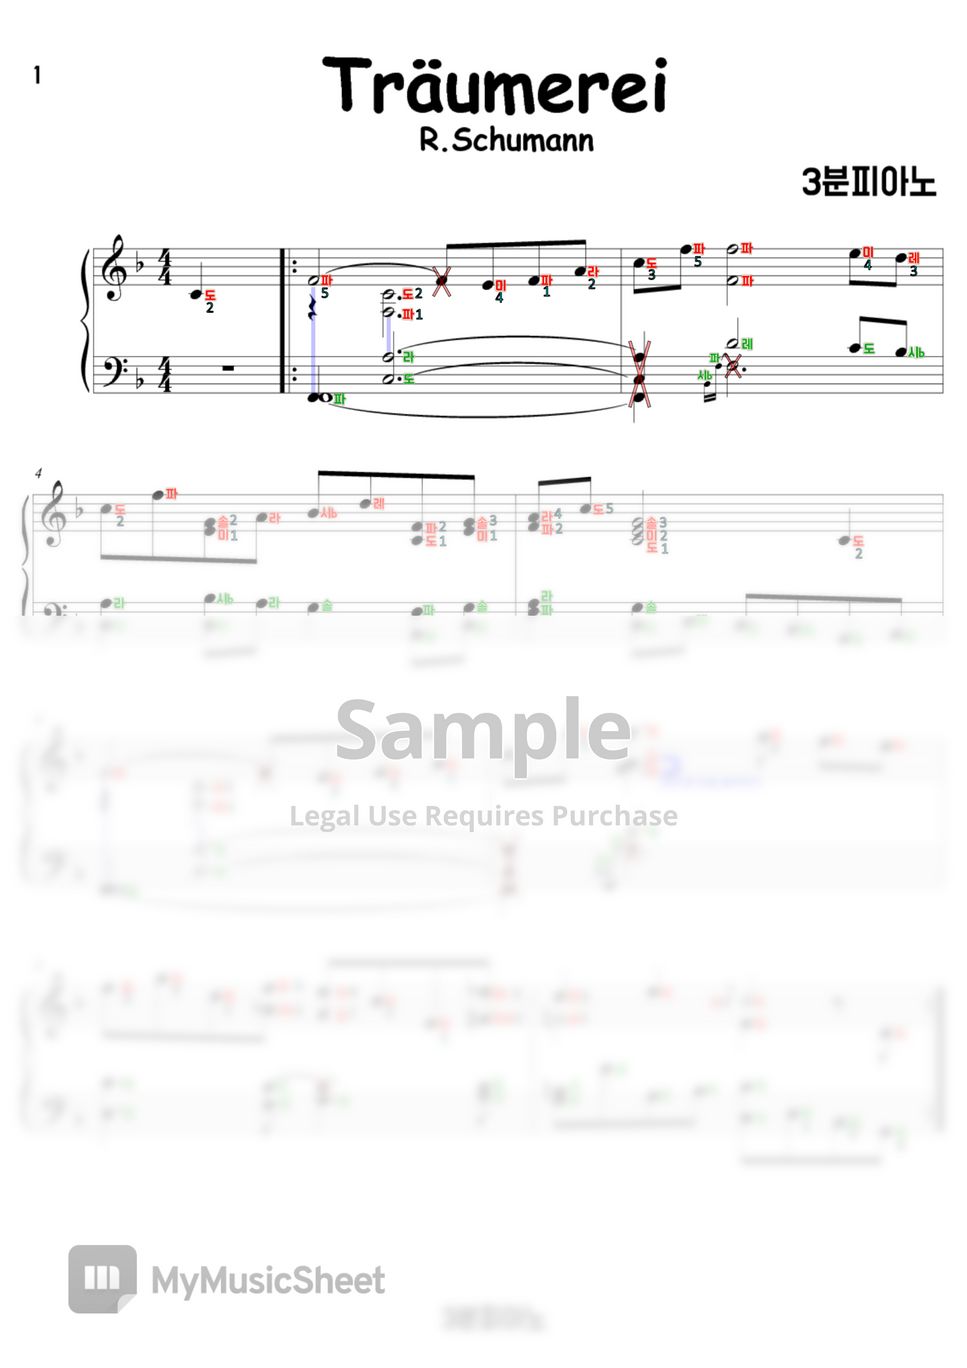 Schumann - Traumerei(트로이메라이) (계이름악보 포함) by 3분피아노